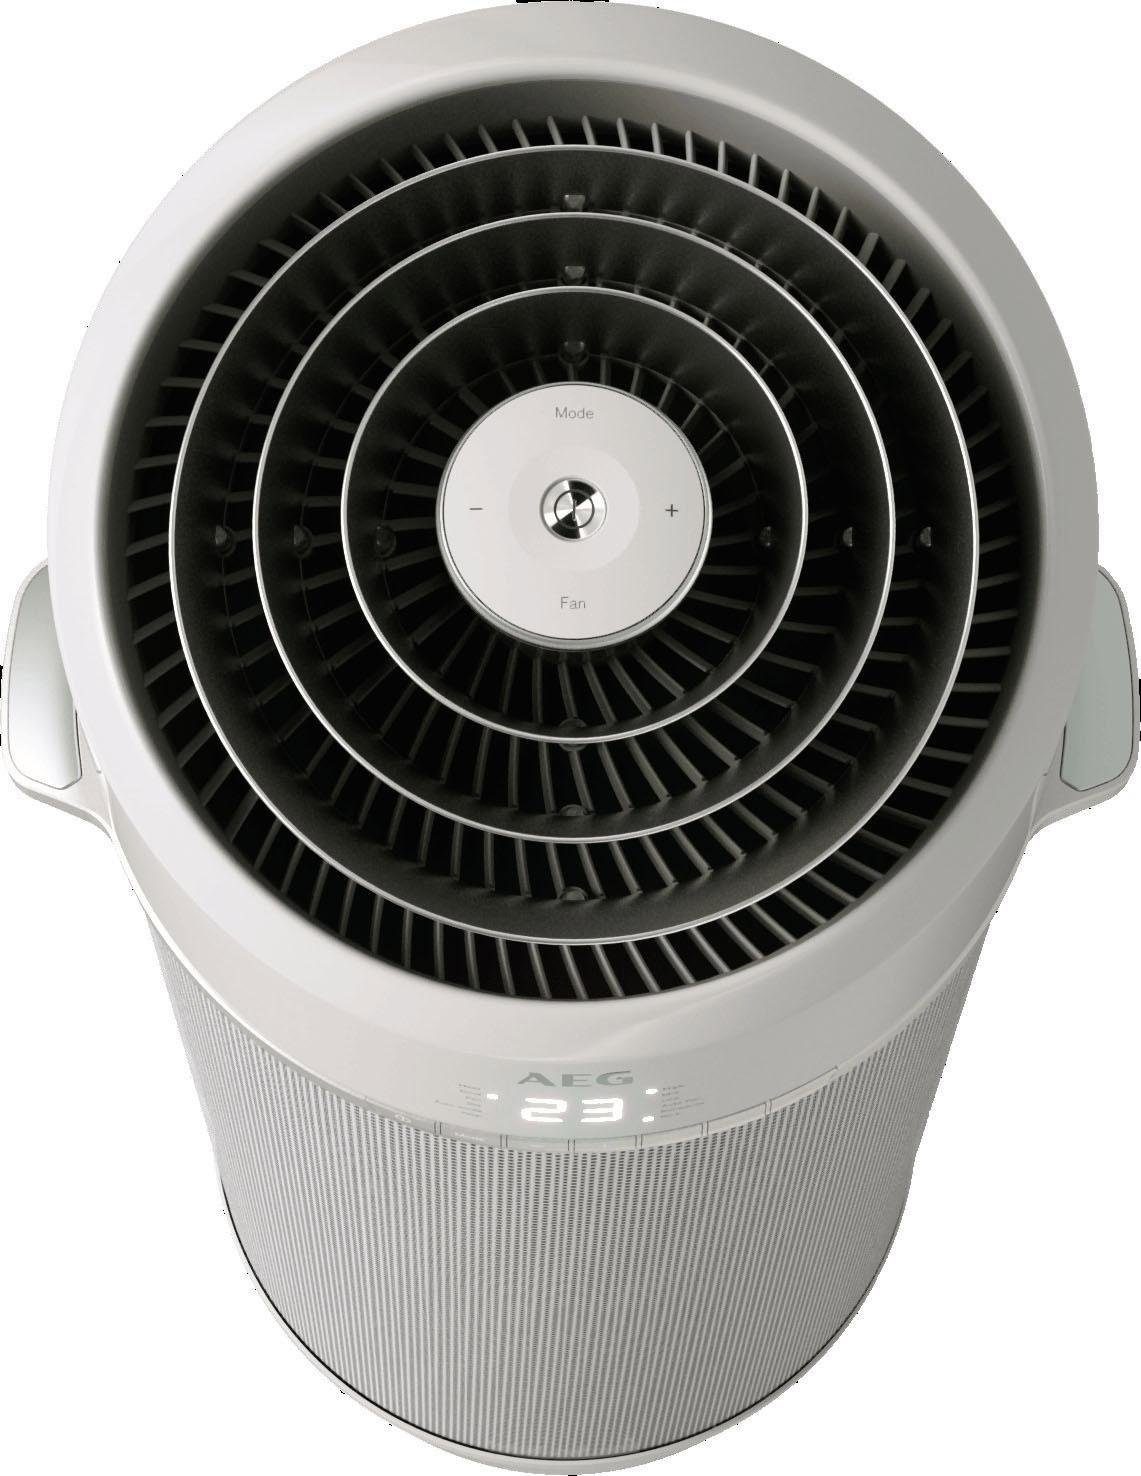 Kühlen, Klimagerät mobile spiralförmiger Ventilation, Heizen, PX71-265WT Eco Entfeuchtung Luftstrom, Klimaanlage AEG